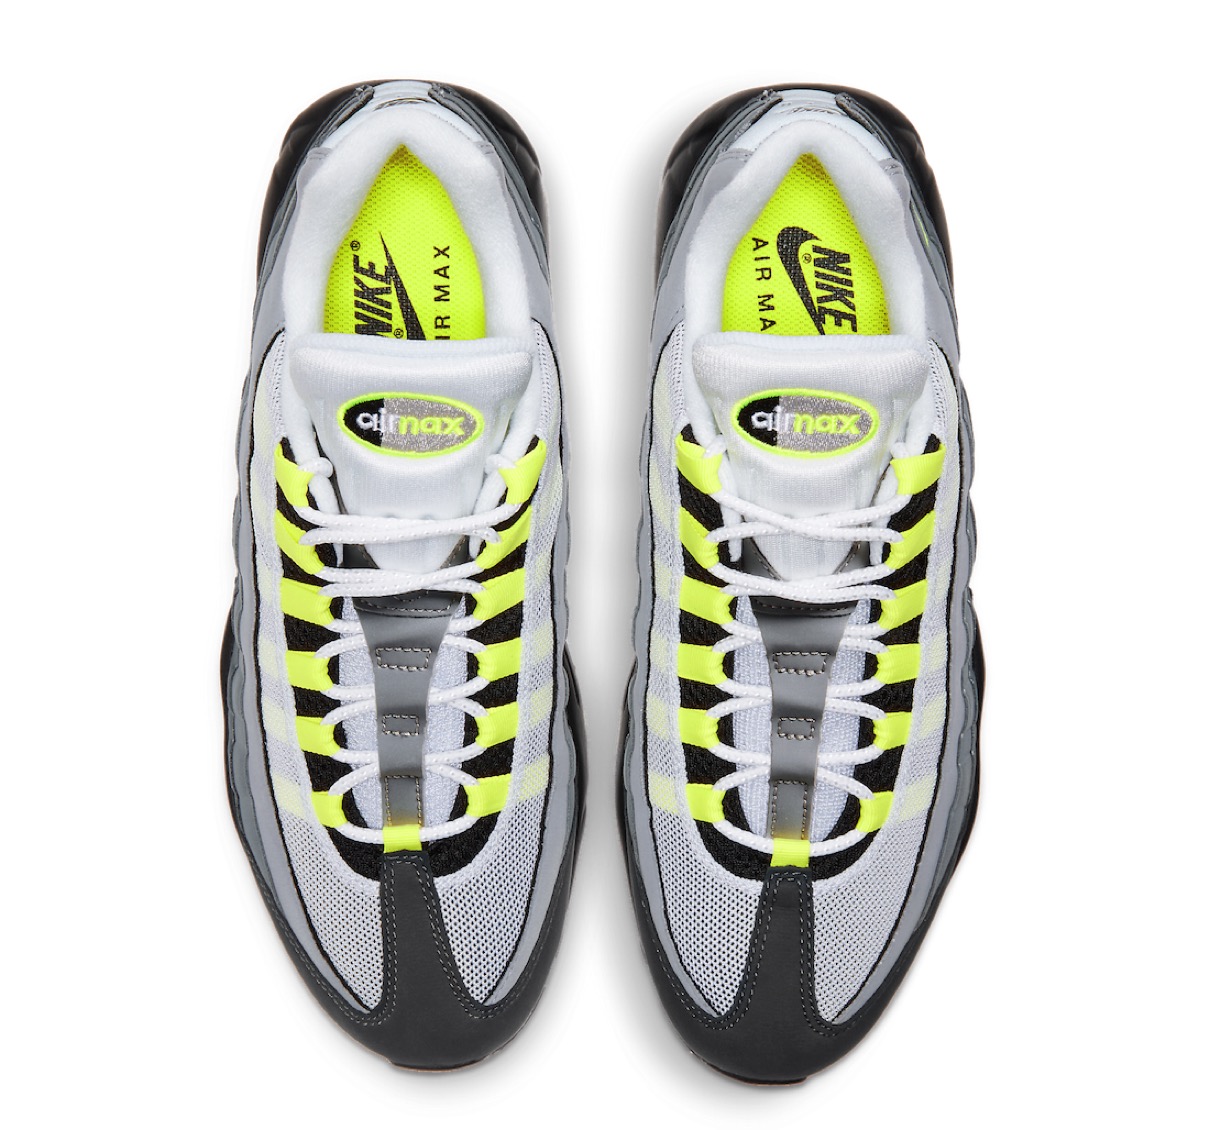 Nike】Air Max 95 OG “Neon” 通称イエローグラデが国内2020年12月17日 